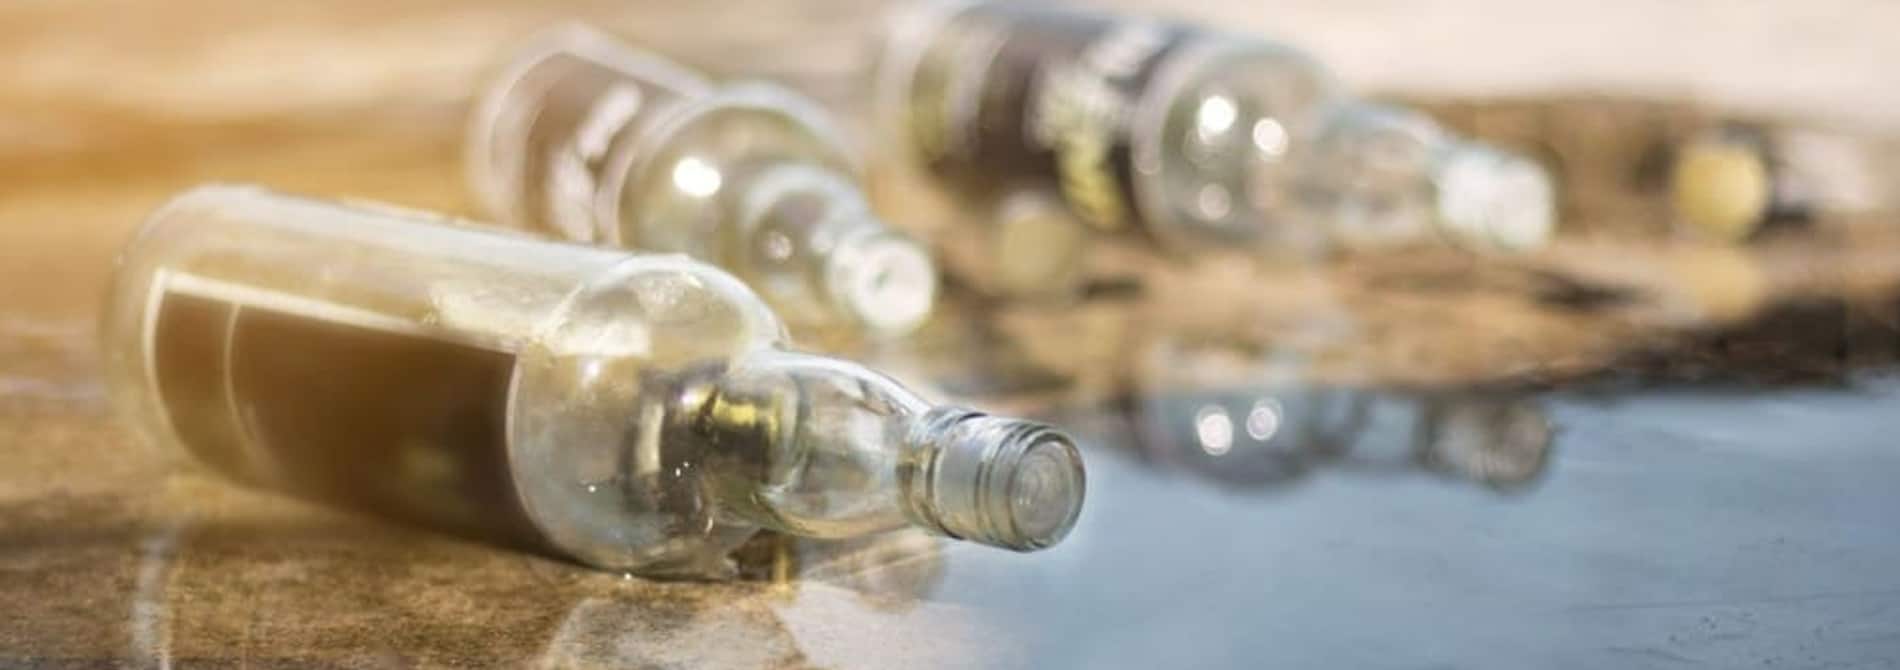 empty clear bottles